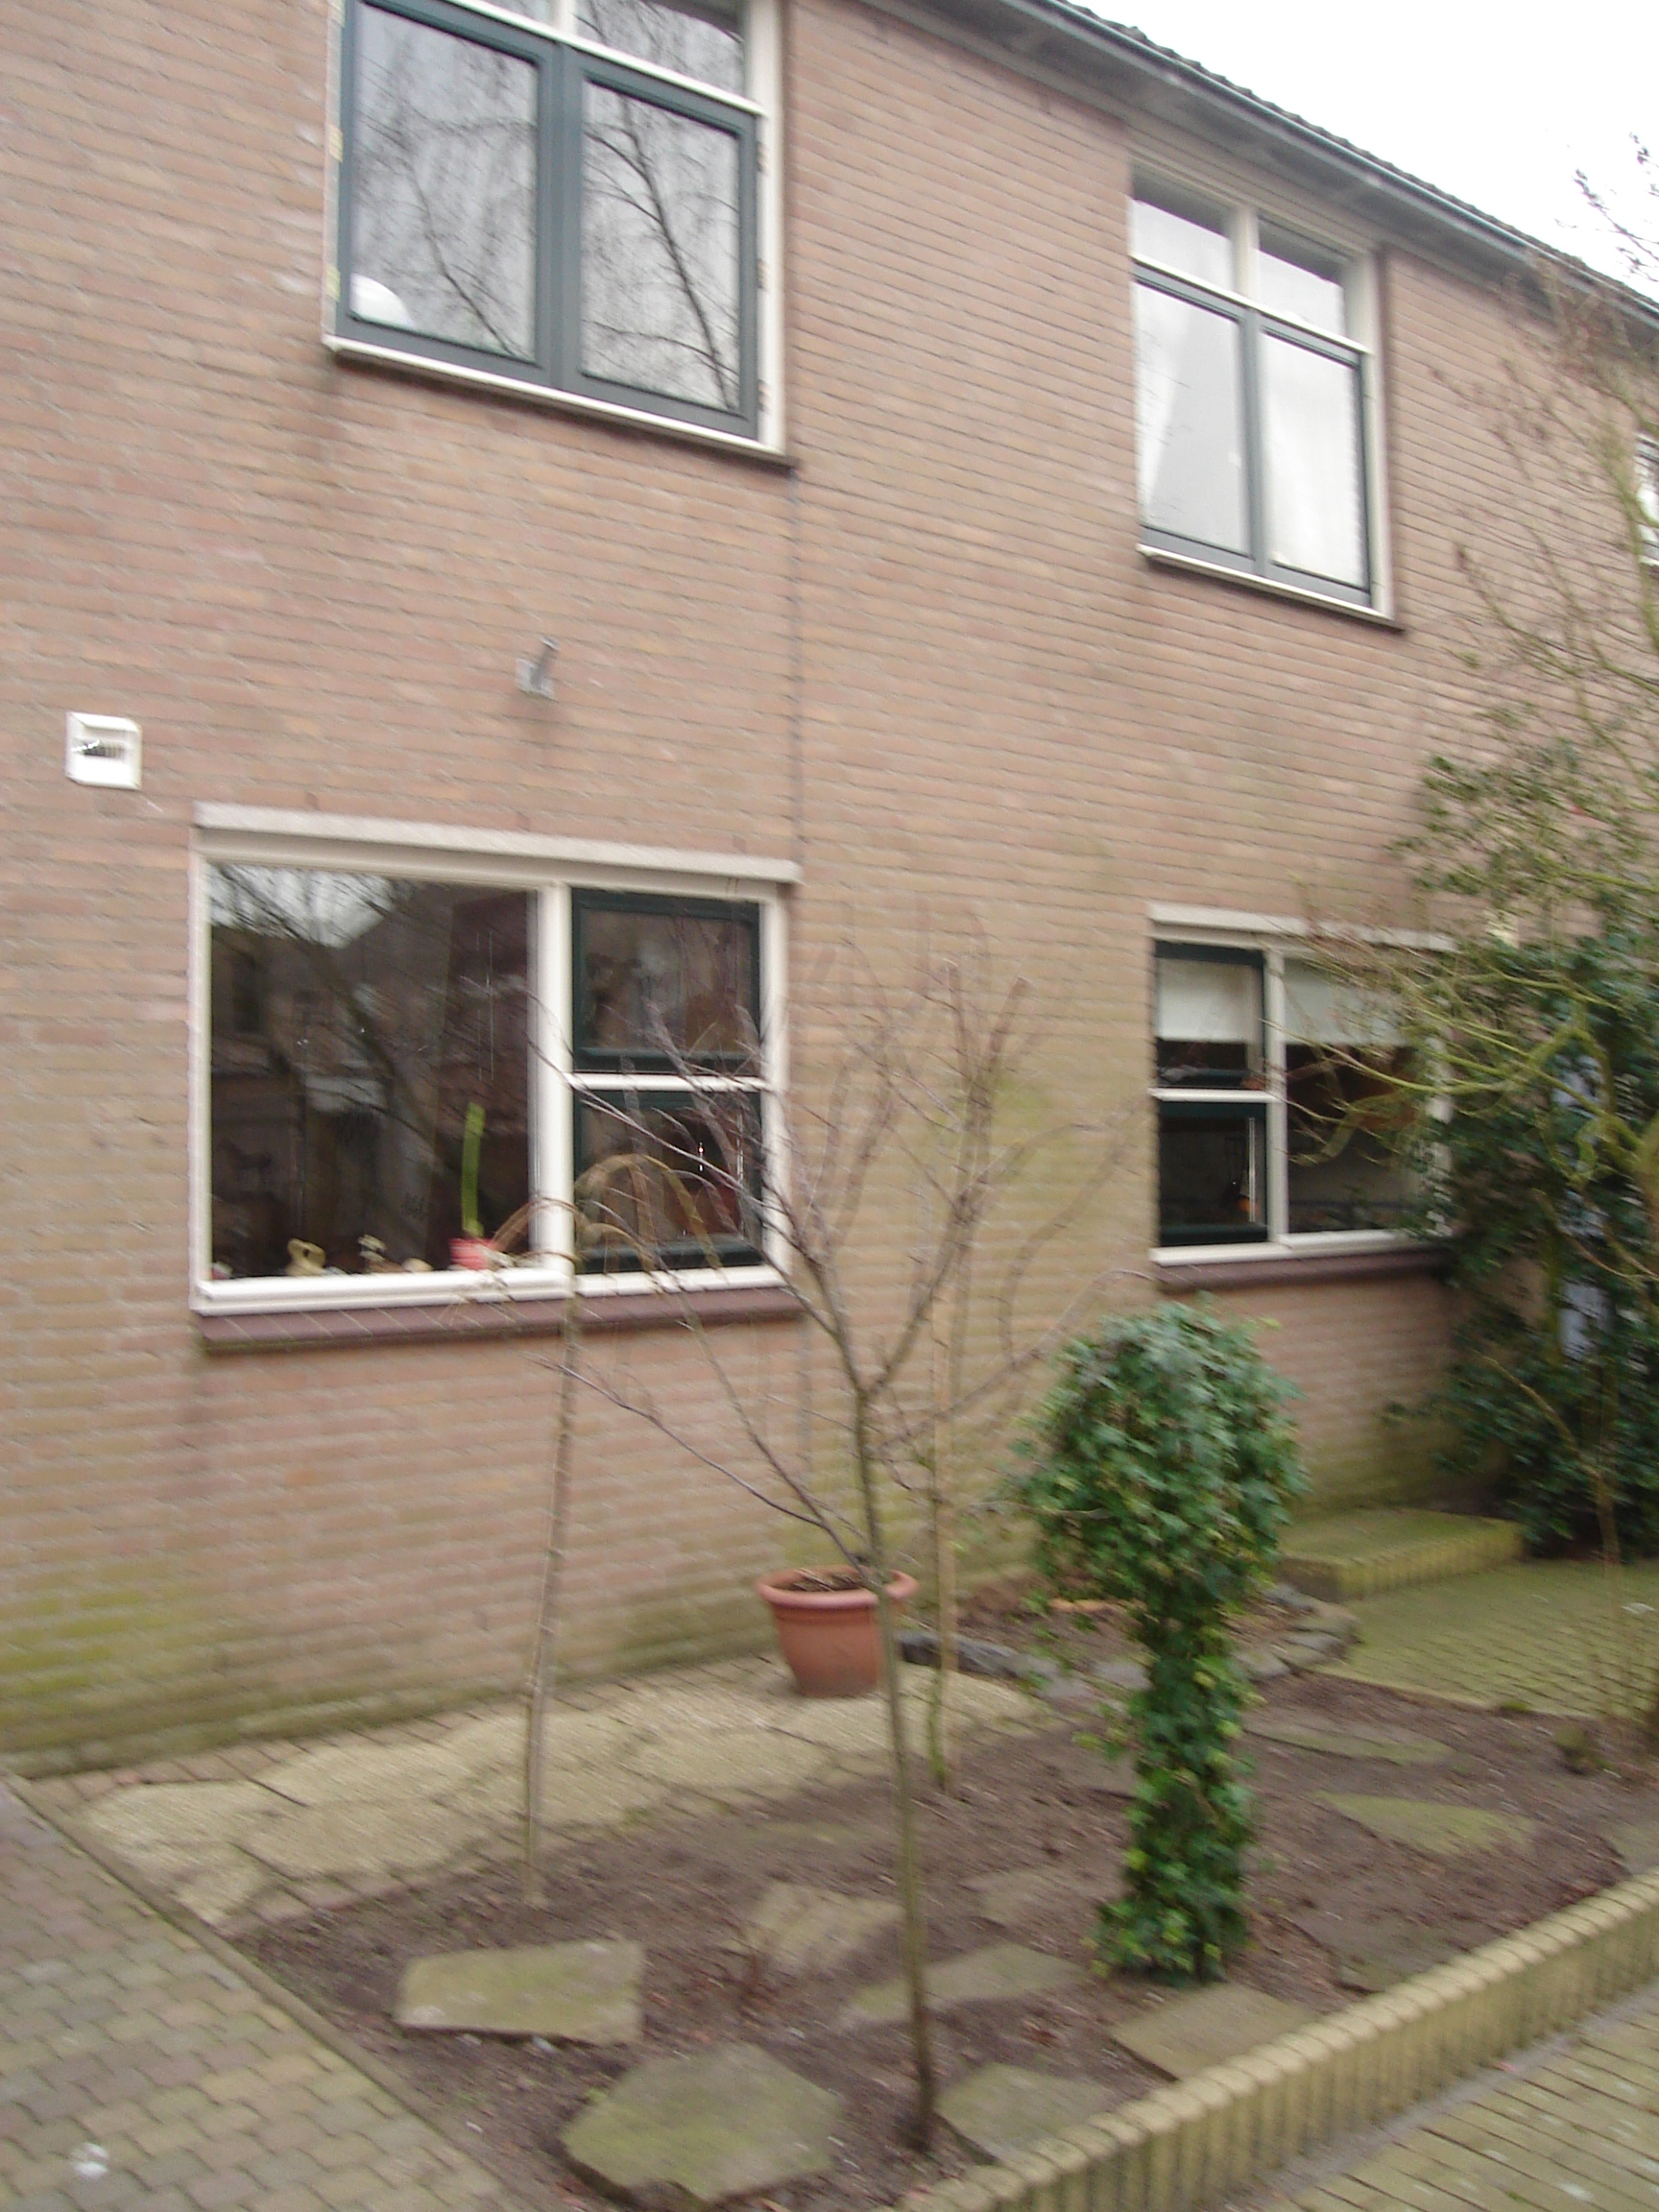 Phia Berghoutlaan 16, 2343 PN Oegstgeest, Nederland